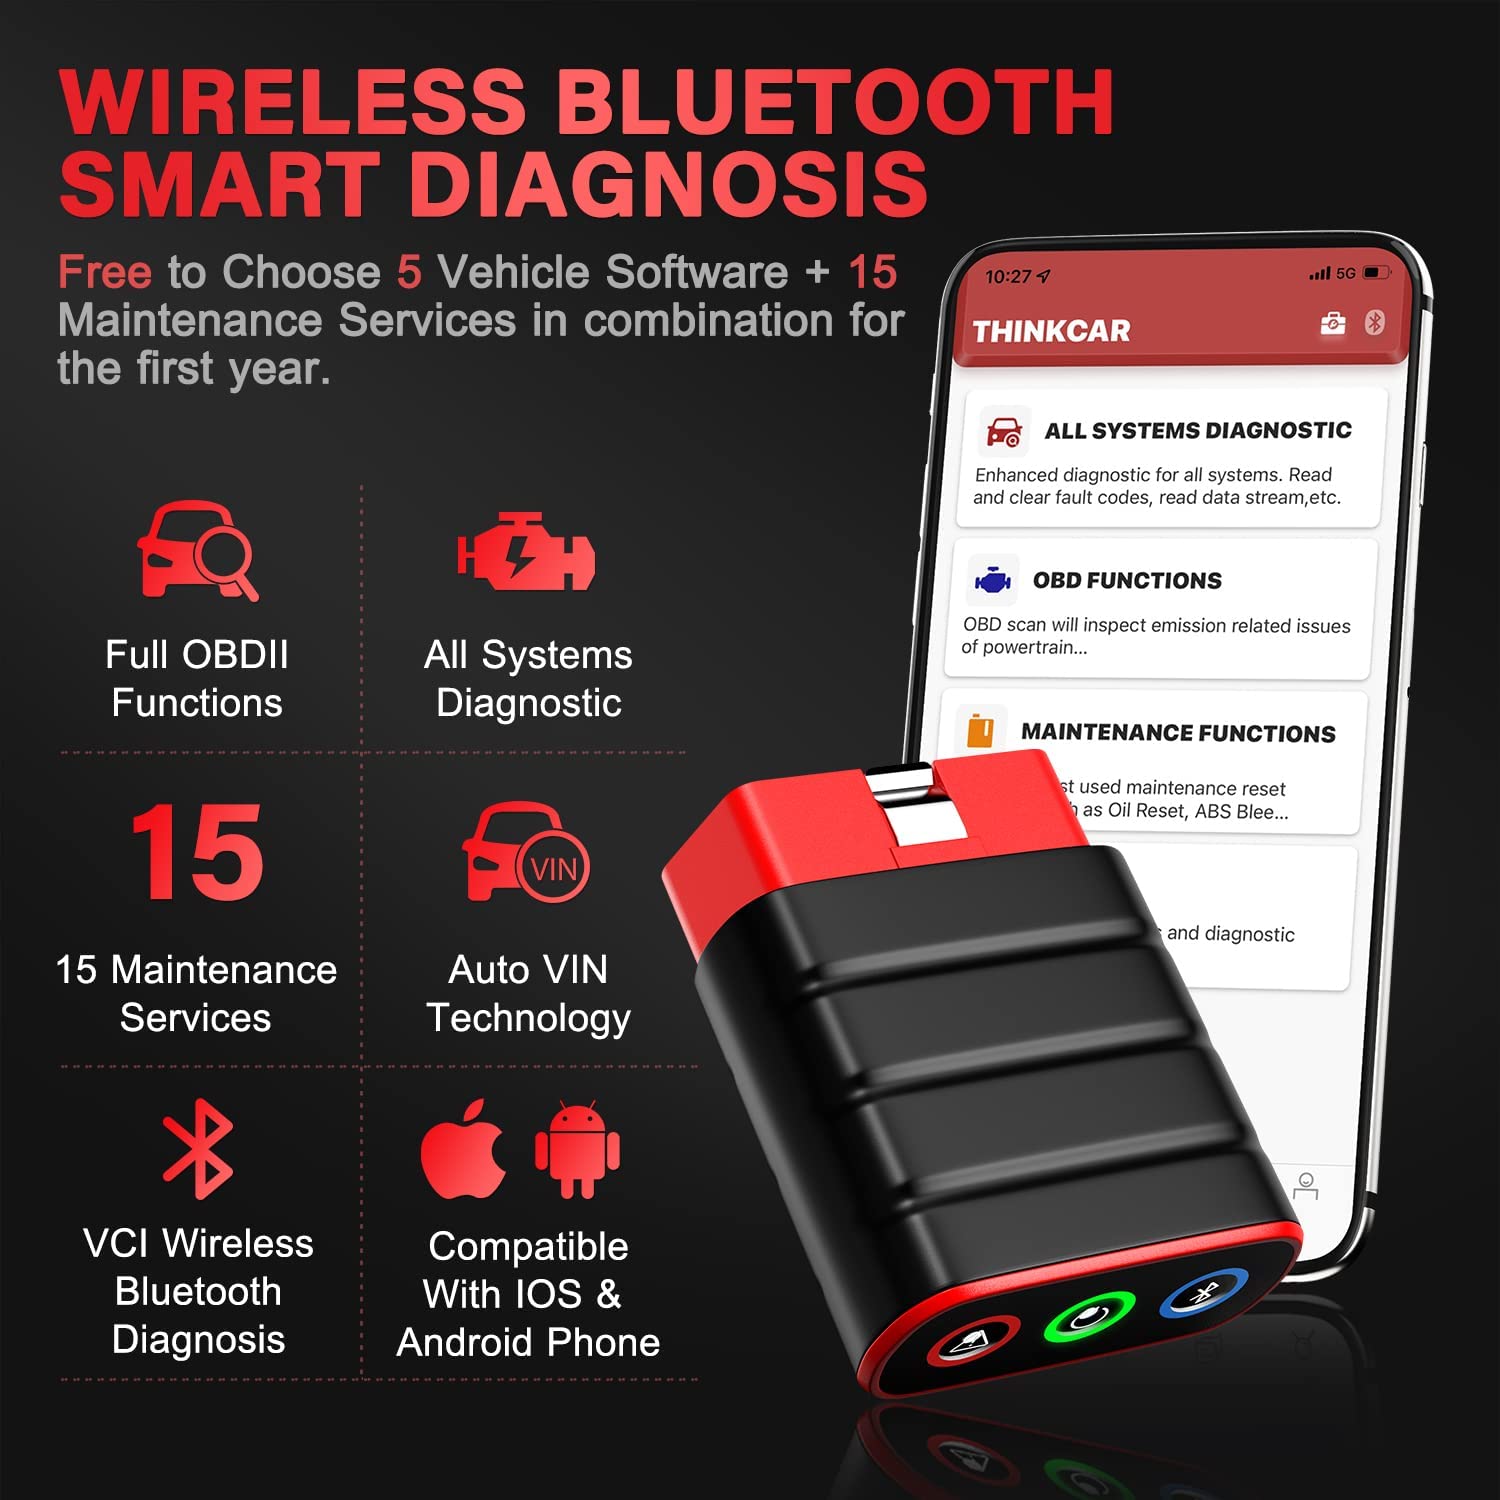 THINKCAR THINKDIAG MINI - Bluetooth OBD2 Scanner Full Systems Car Code